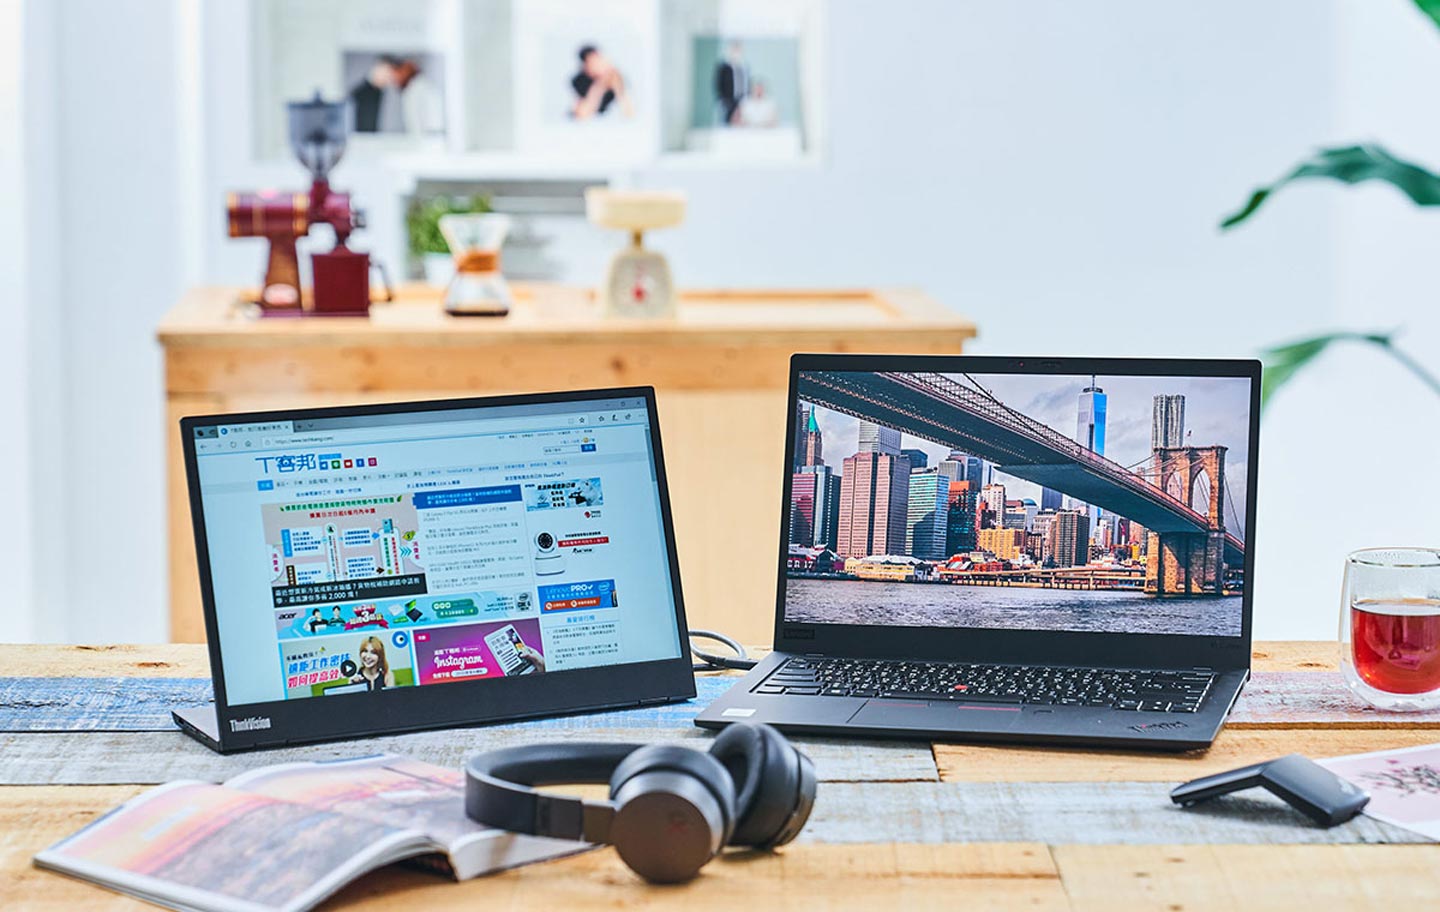 第八代 ThinkPad X1 Carbon 搭配同系列的 ThinkPad X1 簡報器滑鼠、 ThinkPad X1 ANC 主動降噪耳機與 ThinkVision M14 可攜式螢幕，將可為您帶來最佳的行動商務體驗 ！